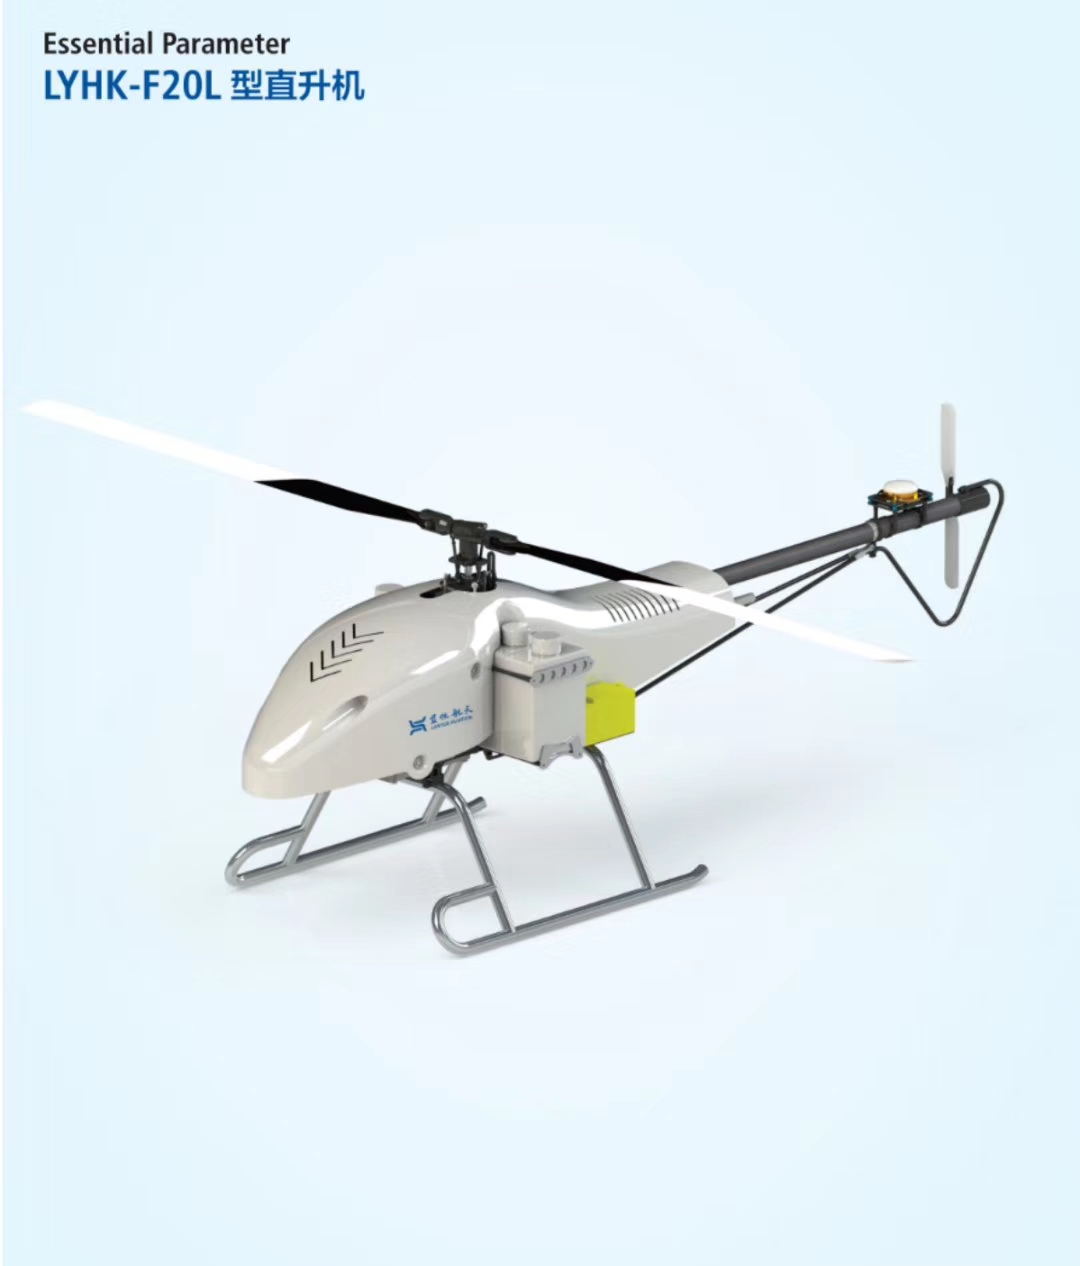 重型运输直升机传动系统构型与技术特点 - (国内统一连续出版物号为 CN10-1570/V)